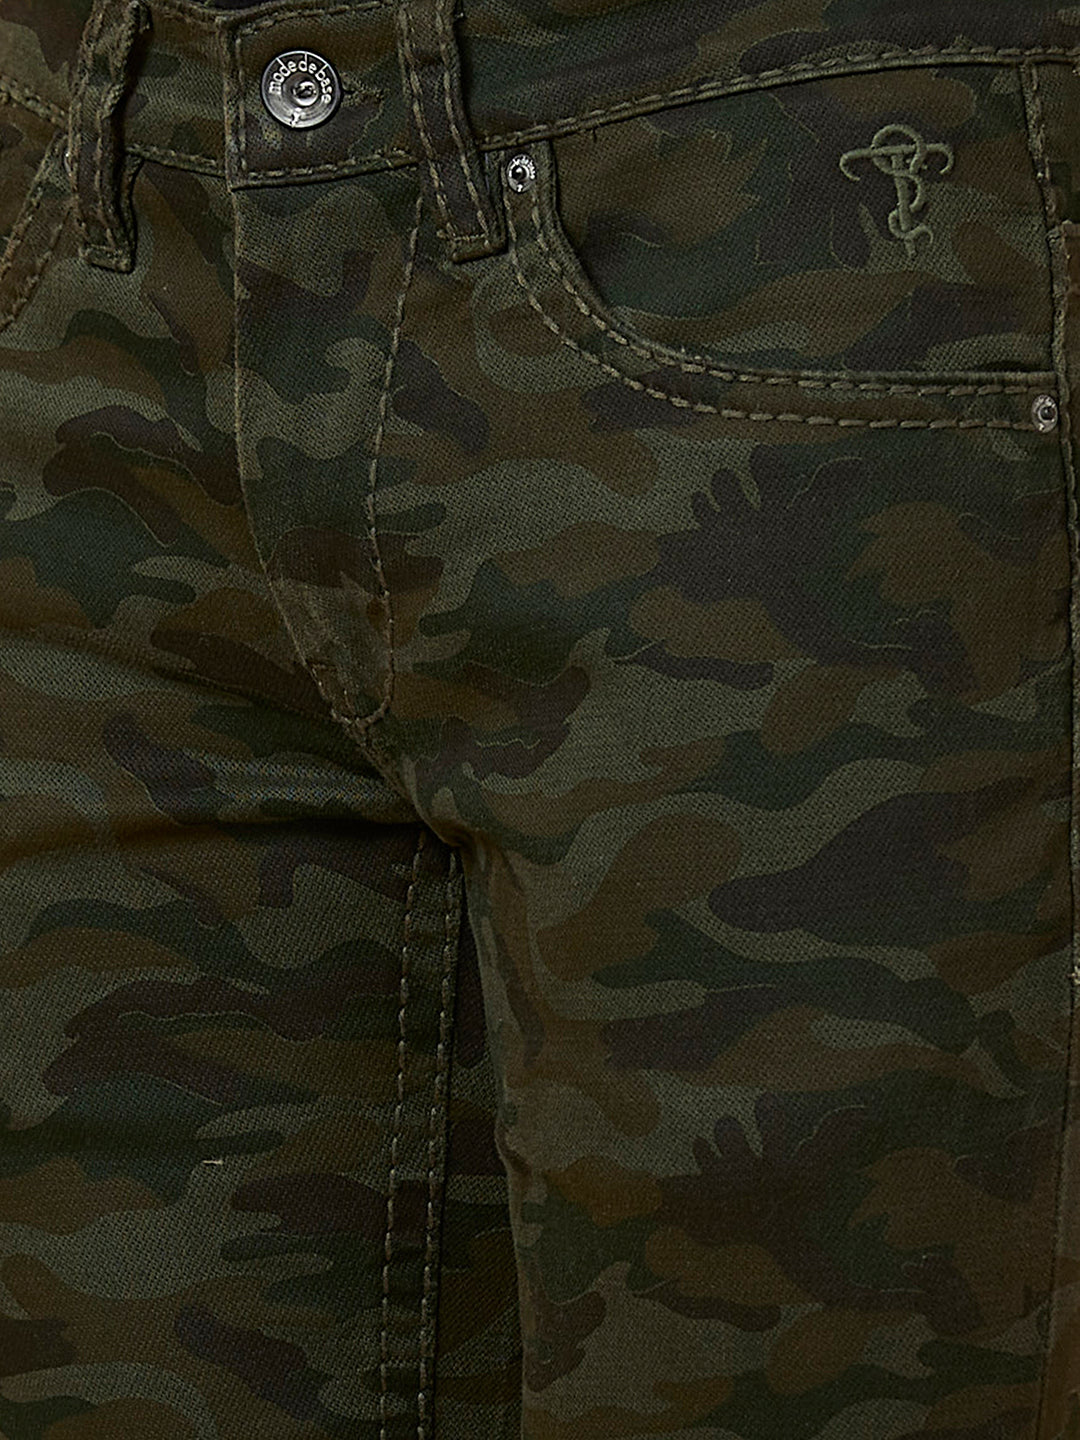 Dark Green Camouflage Boot-cut Jeans Zipper Bottom